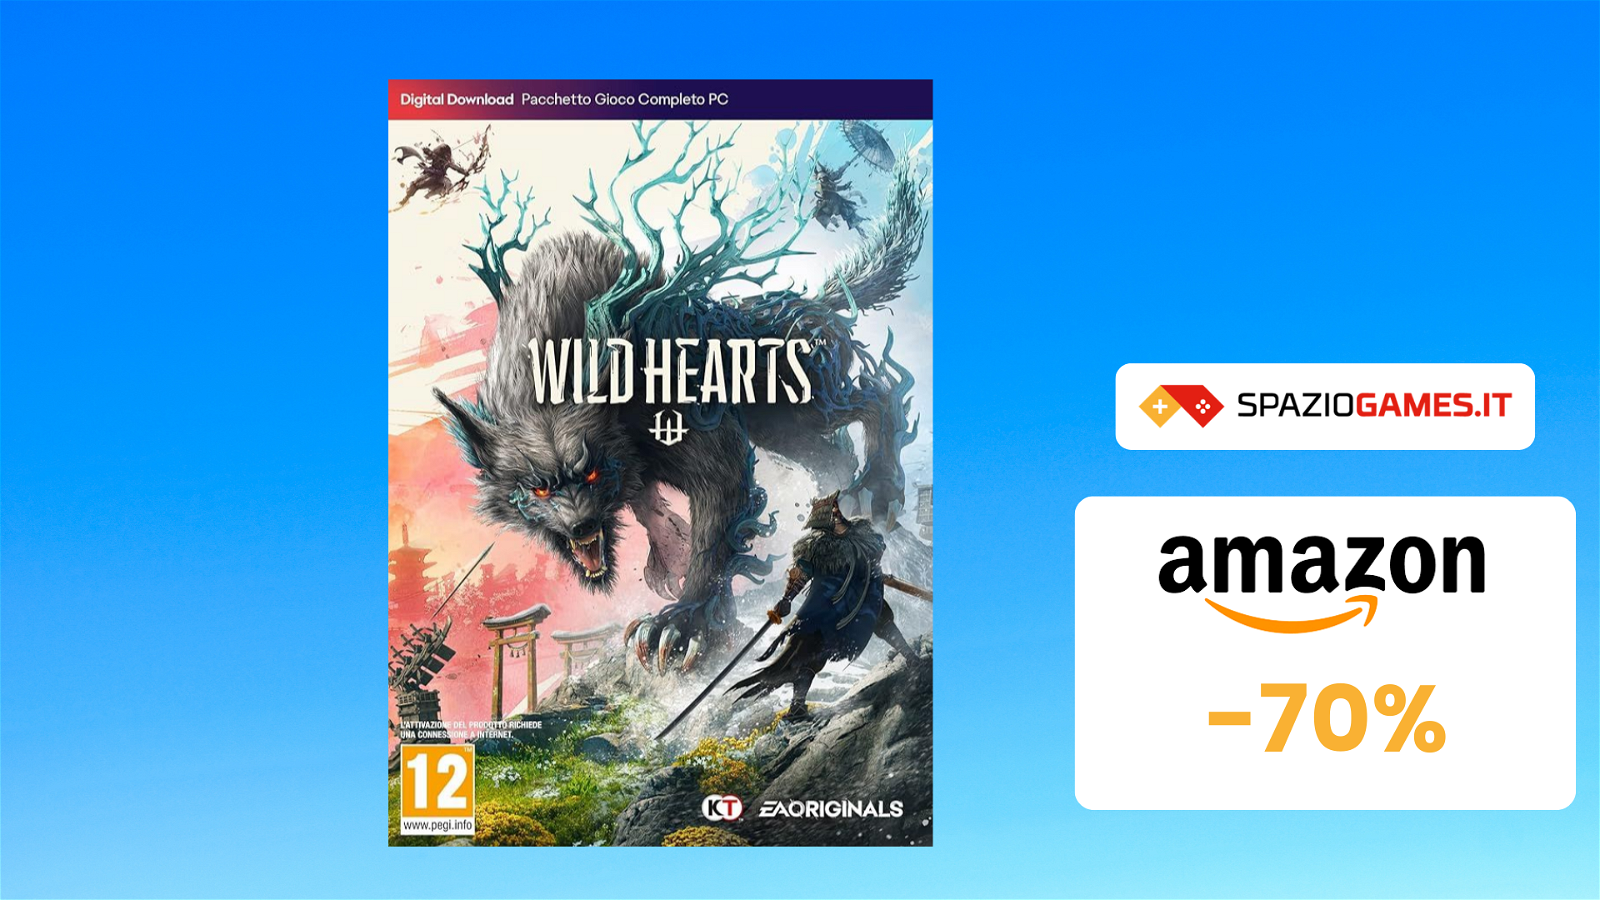 Wild Hearts per PC a 21€: incredibile sconto del 70%!